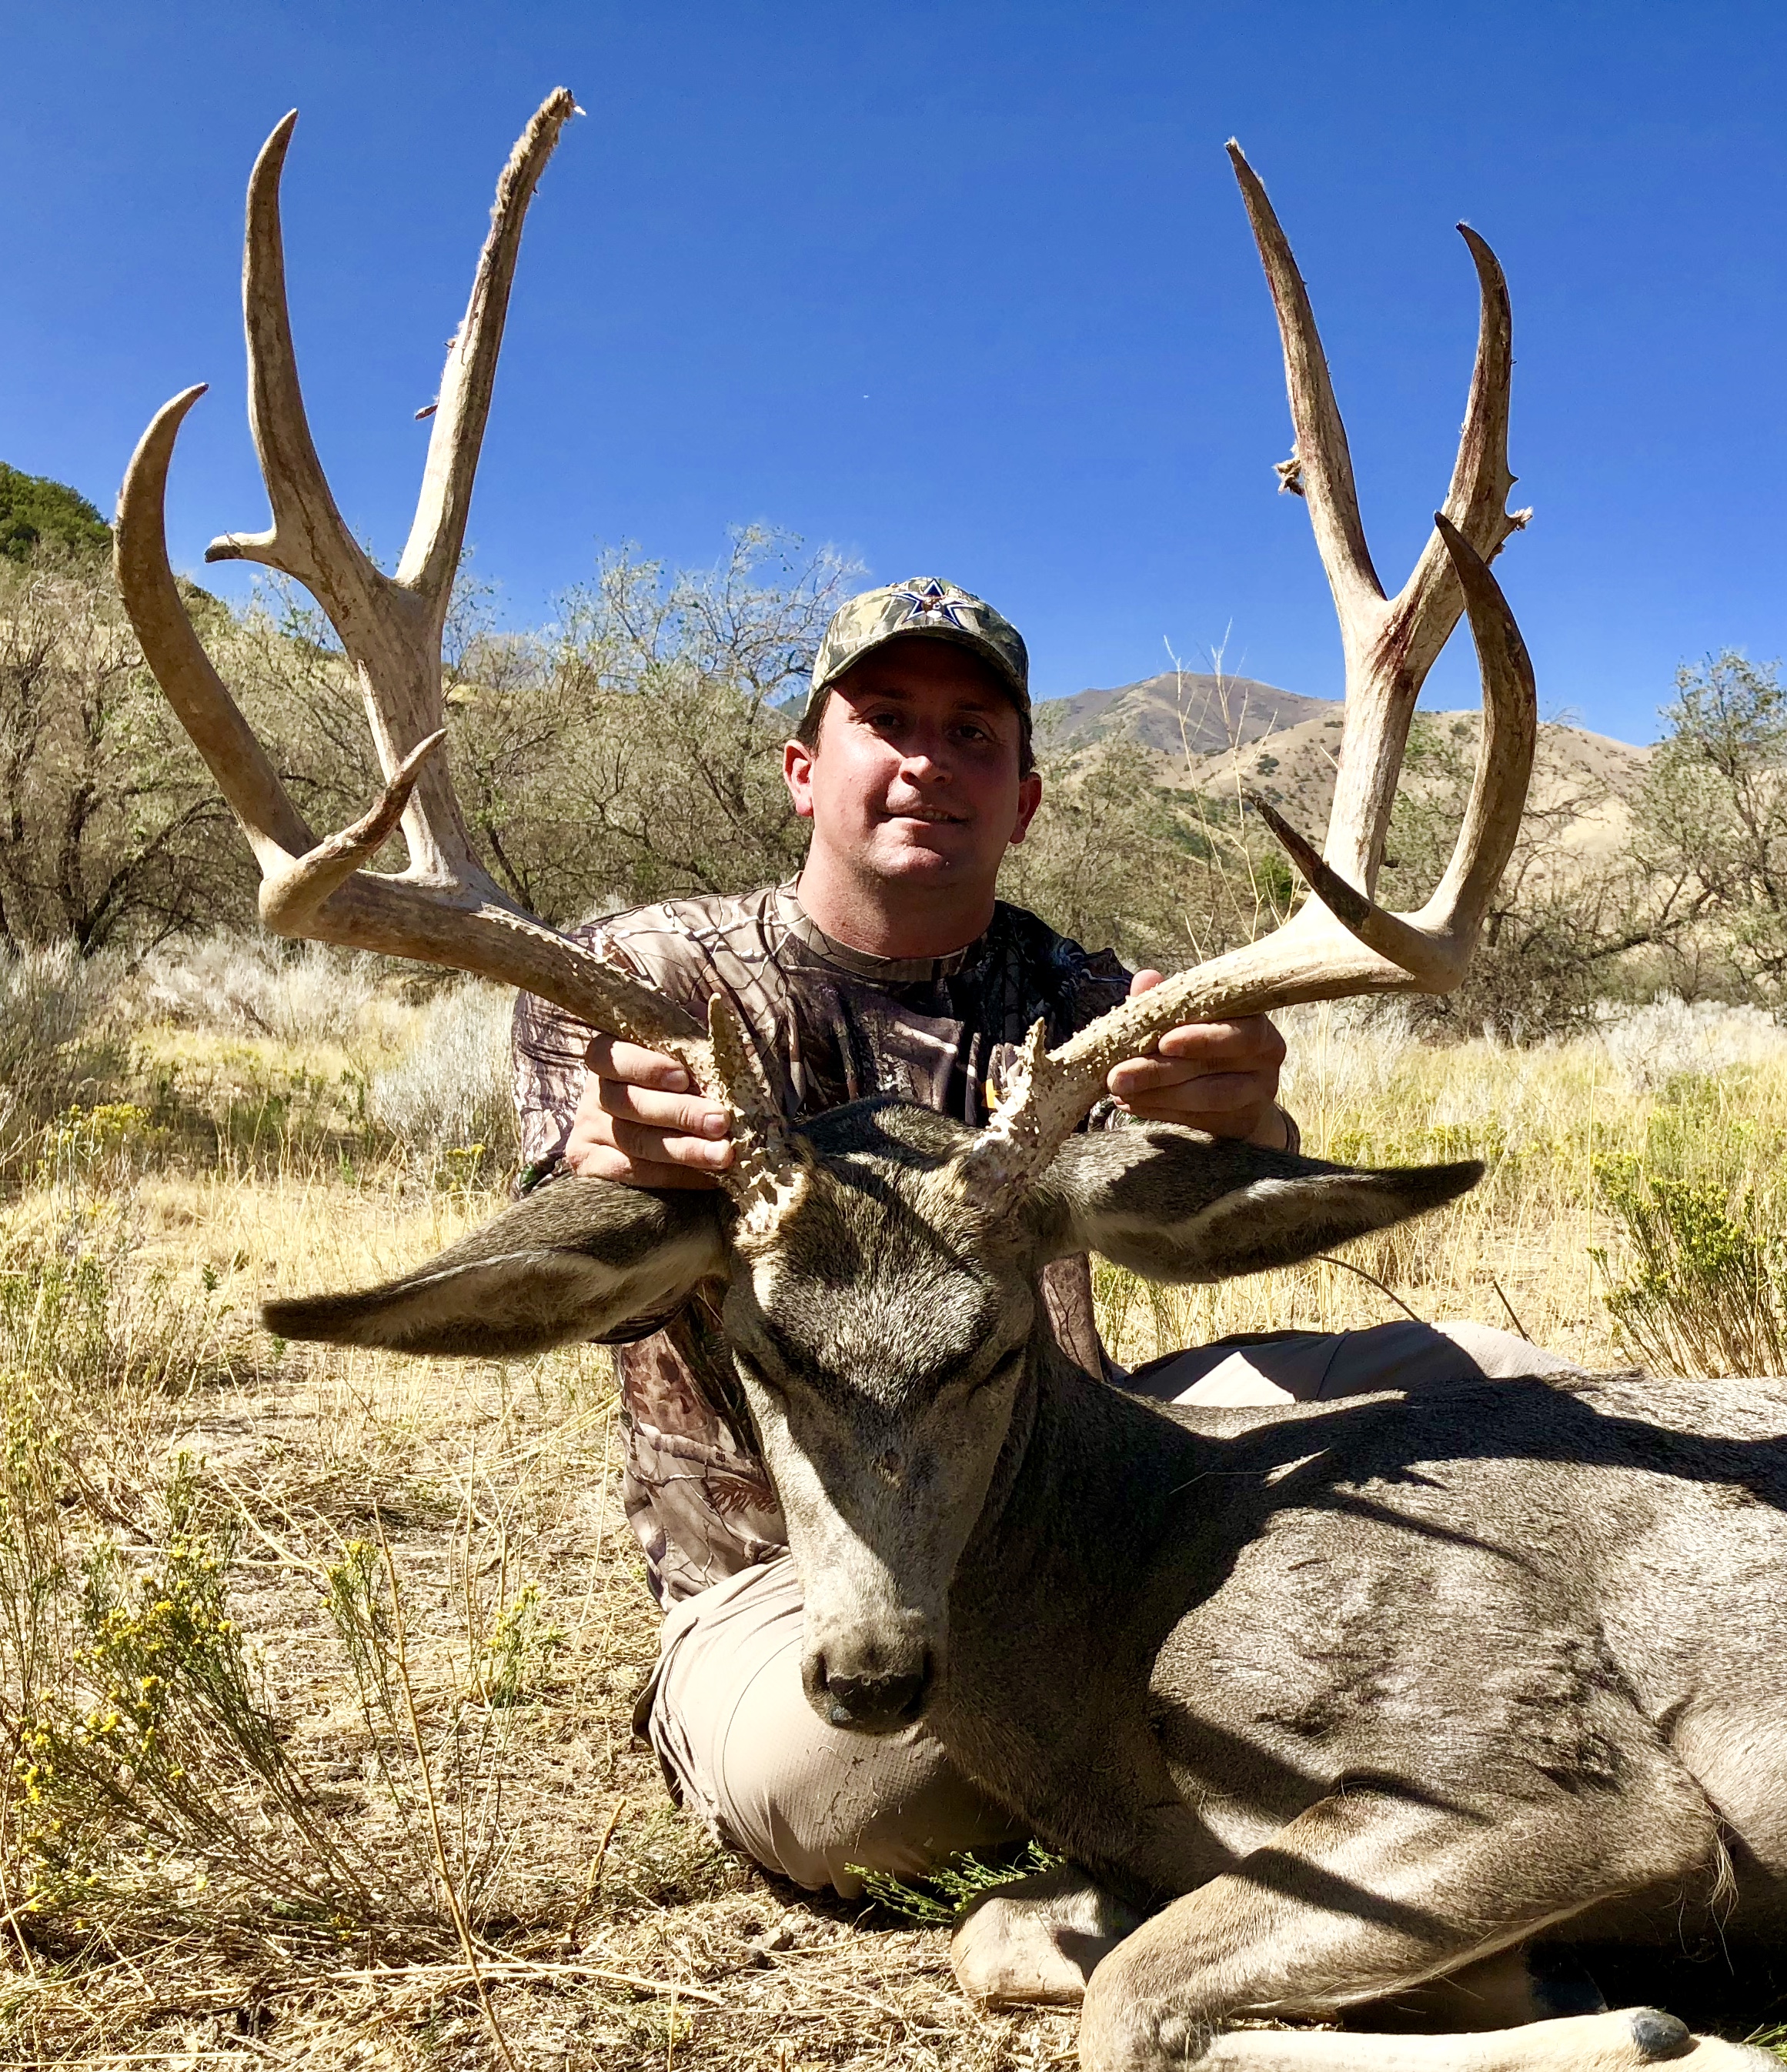 Trophy Mule Deer hunt Utah or Colorado. | Bucks & Bulls Guides & Outfitters